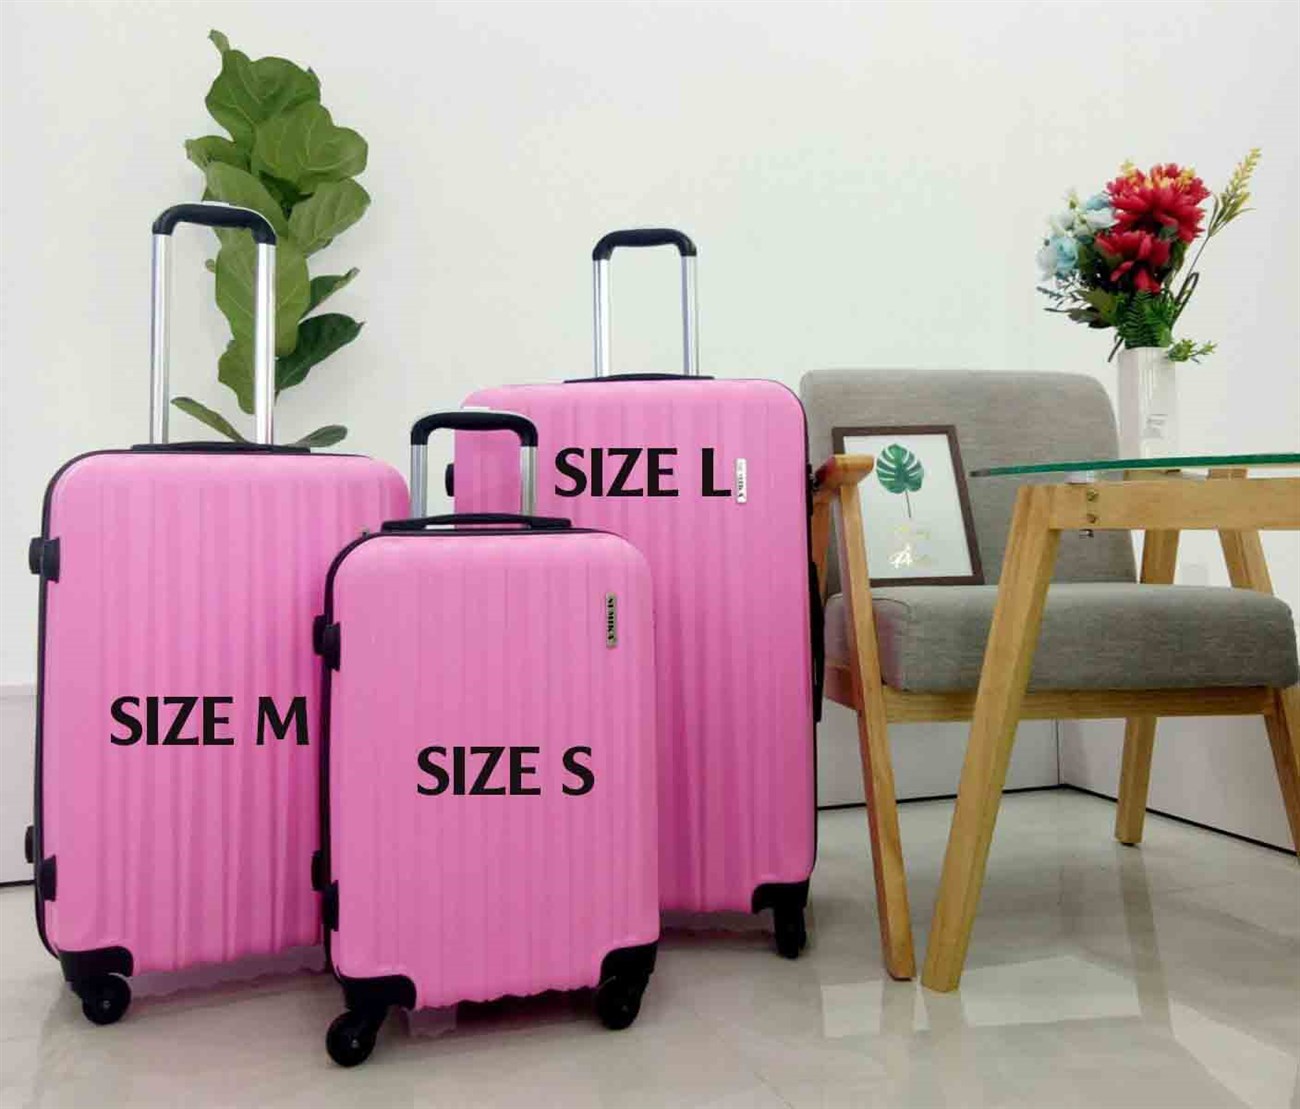 Kinh nghiệm hay chọn mua vali đơn giản, cực chất, phù hợp cho bạn